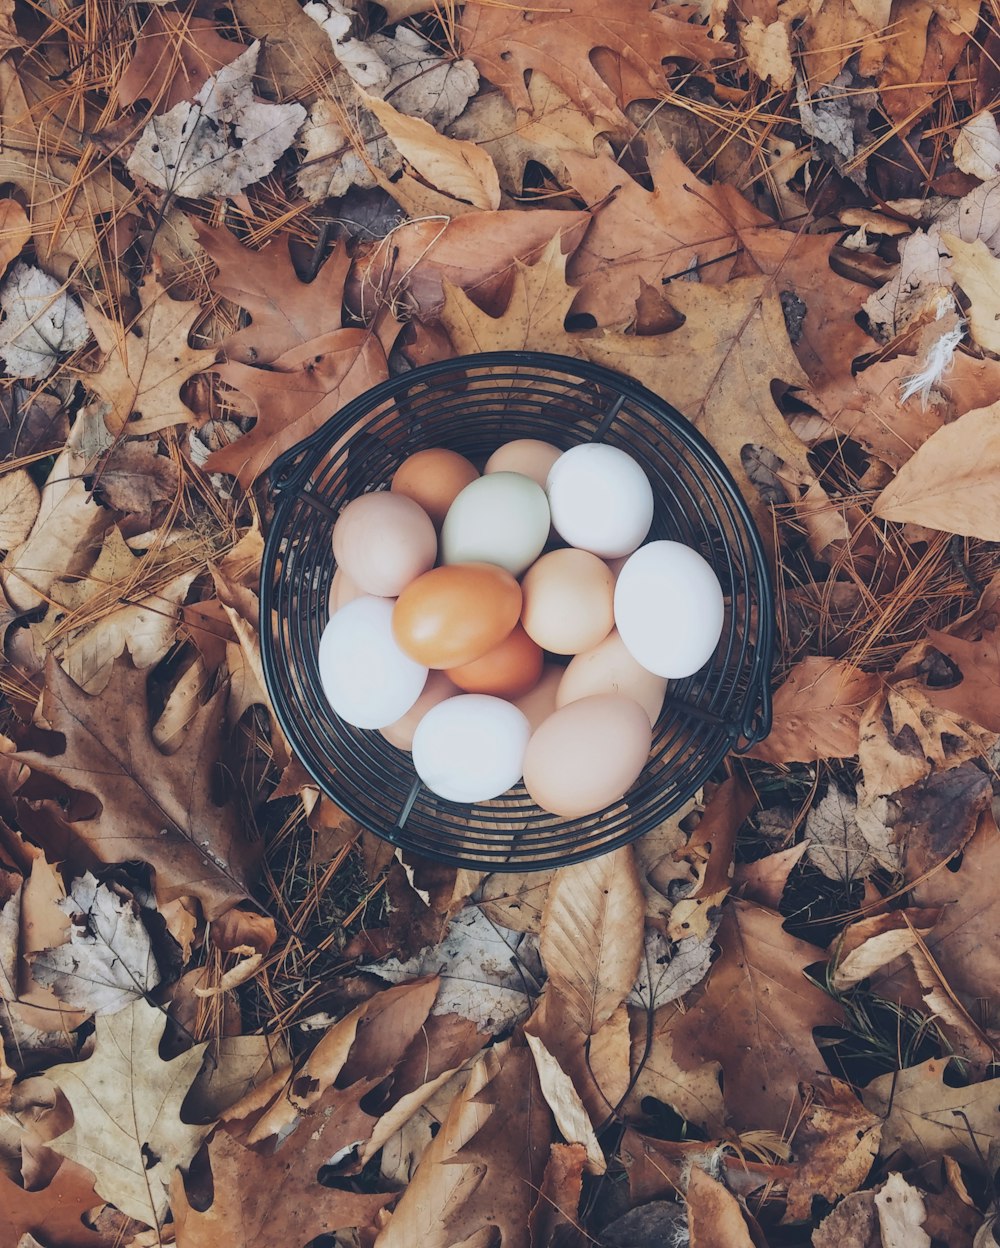 흰 달걀과 갈색 달걀